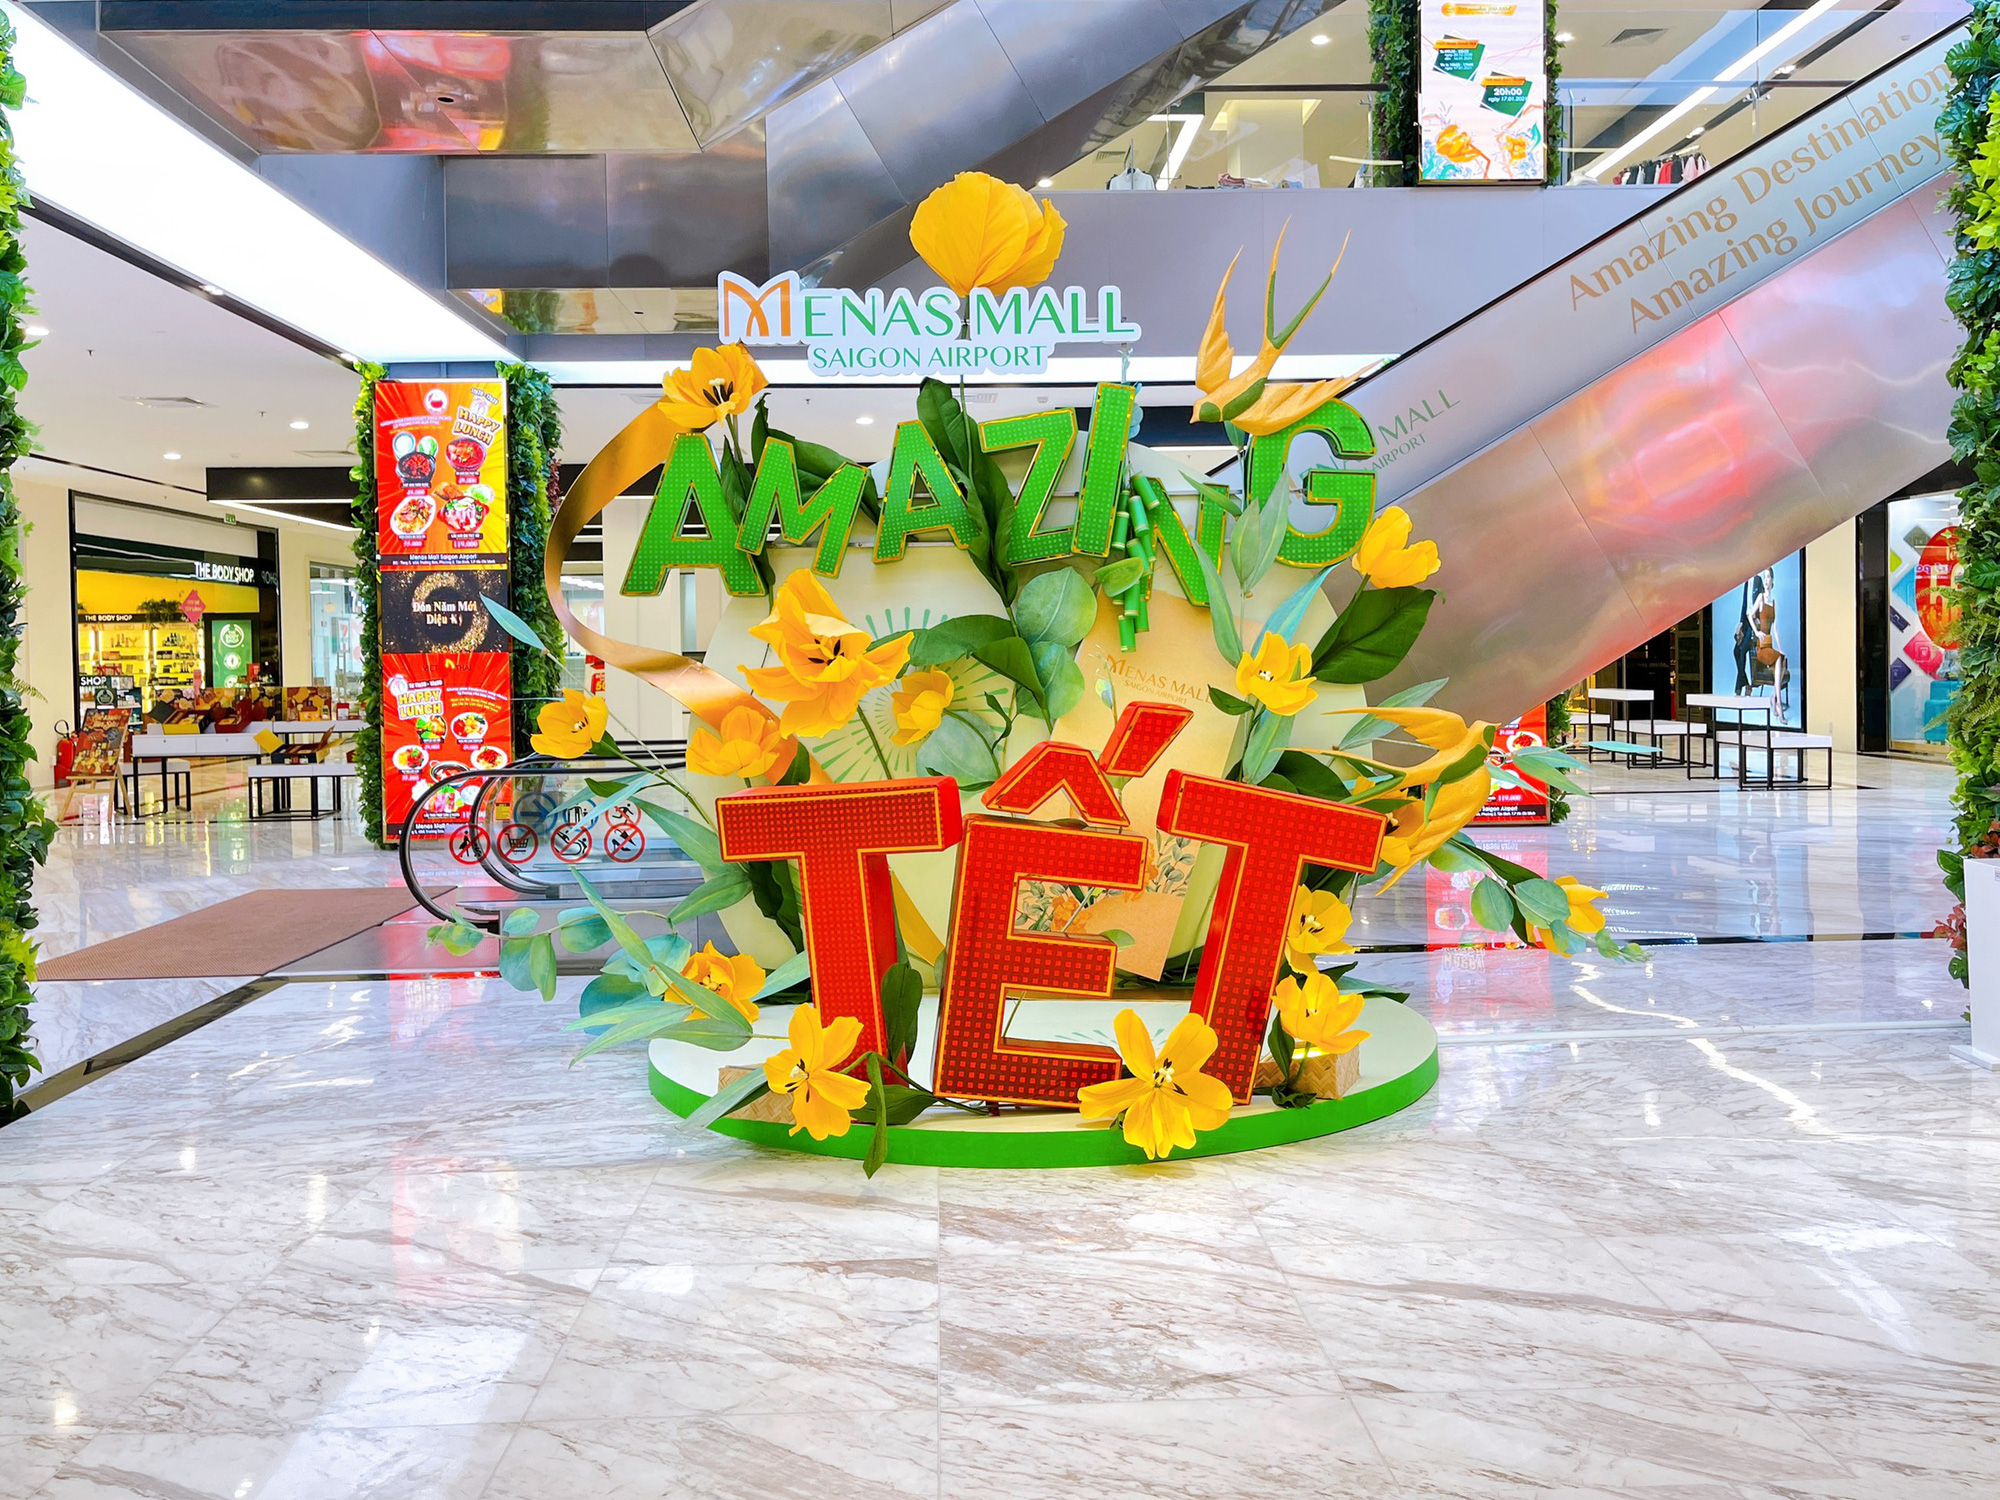 Amazing Tết - Đón năm mới diệu kỳ tại Menas Mall Saigon Airport - Ảnh 2.